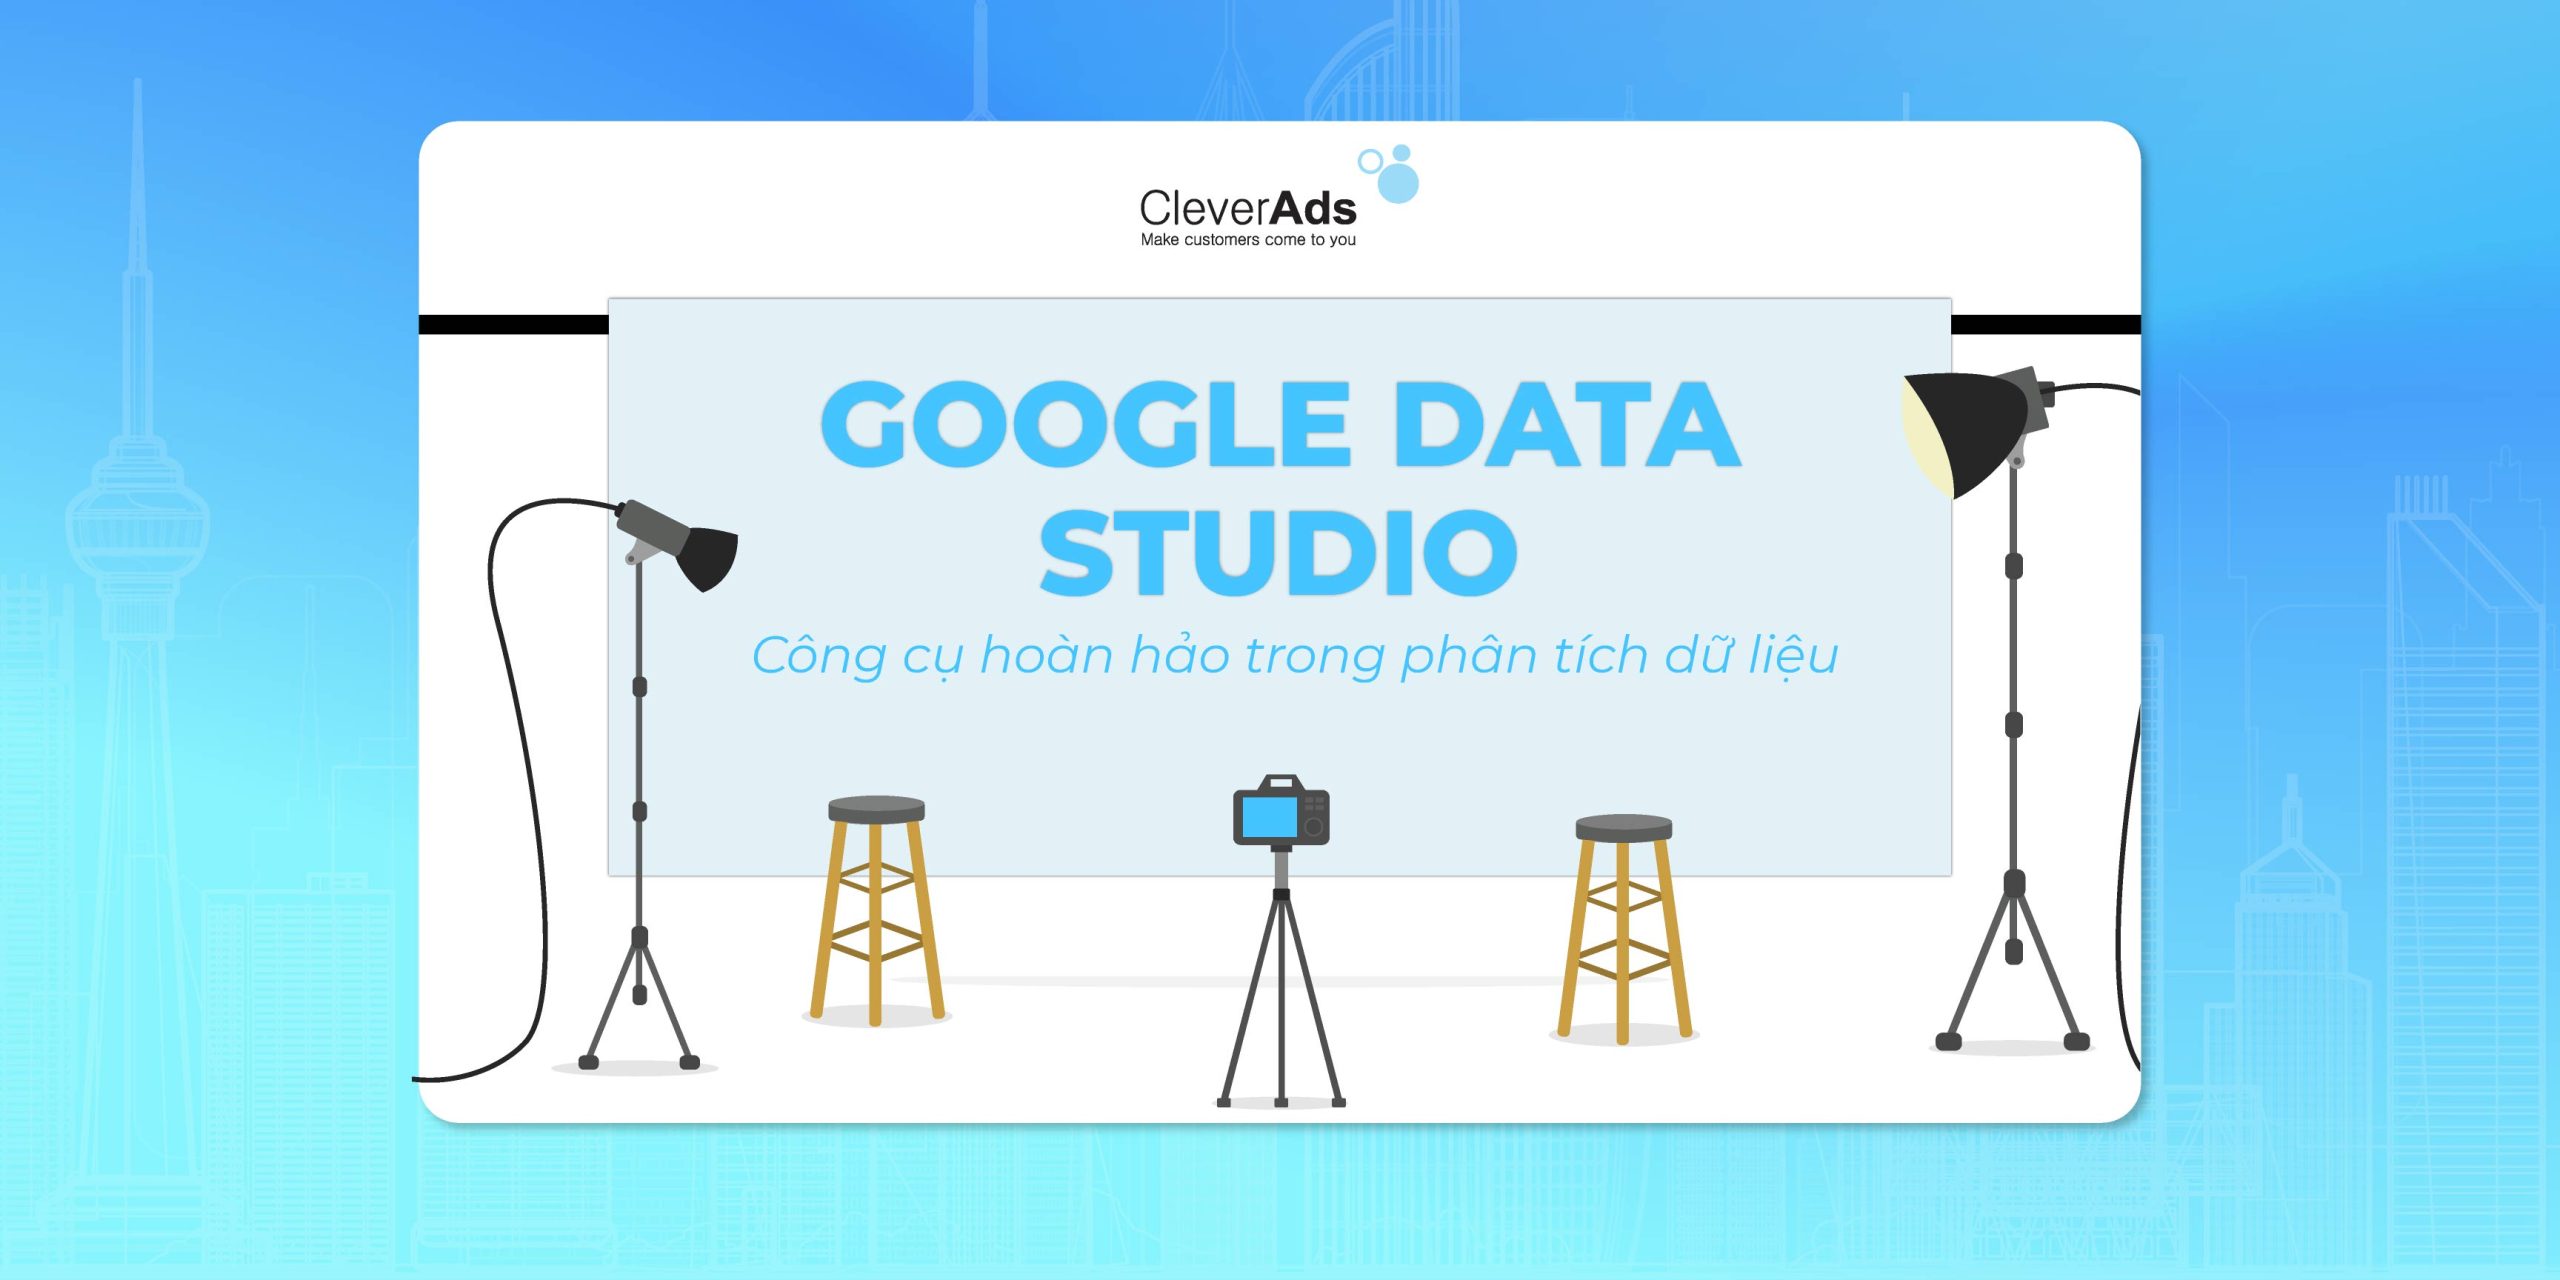 Google data studio – Công cụ hoàn hảo trong phân tích dữ liệu